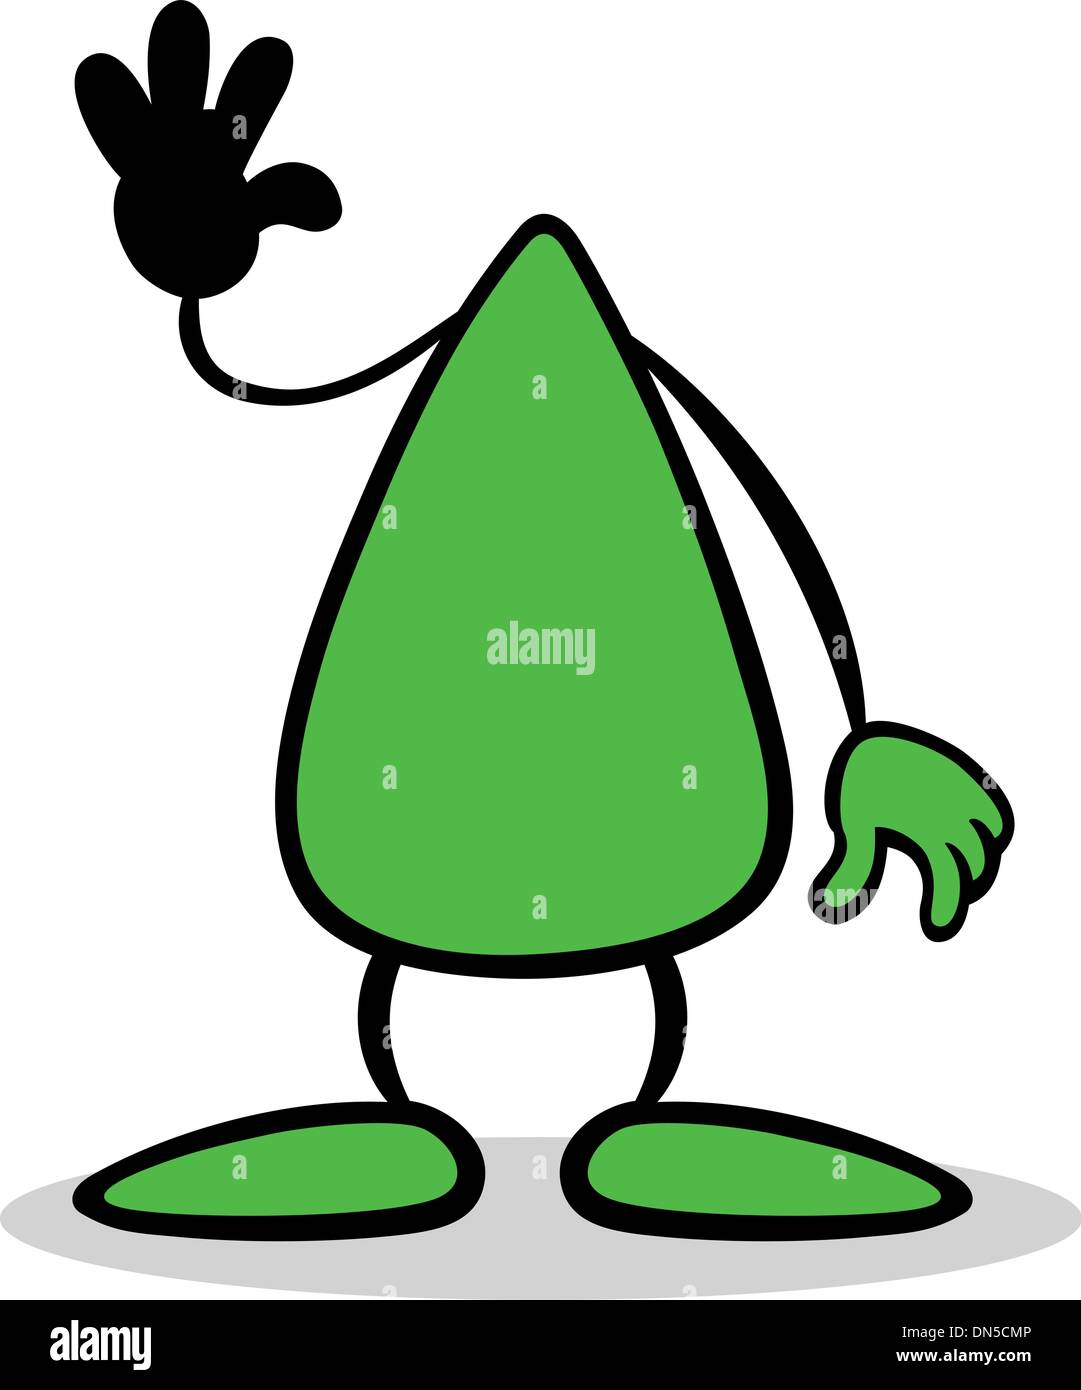 Desenho Animado Verde De Aquarela Com Personagem De Ufo Alienígena Com  Antena Ilustração Stock - Ilustração de homem, monstro: 236876280